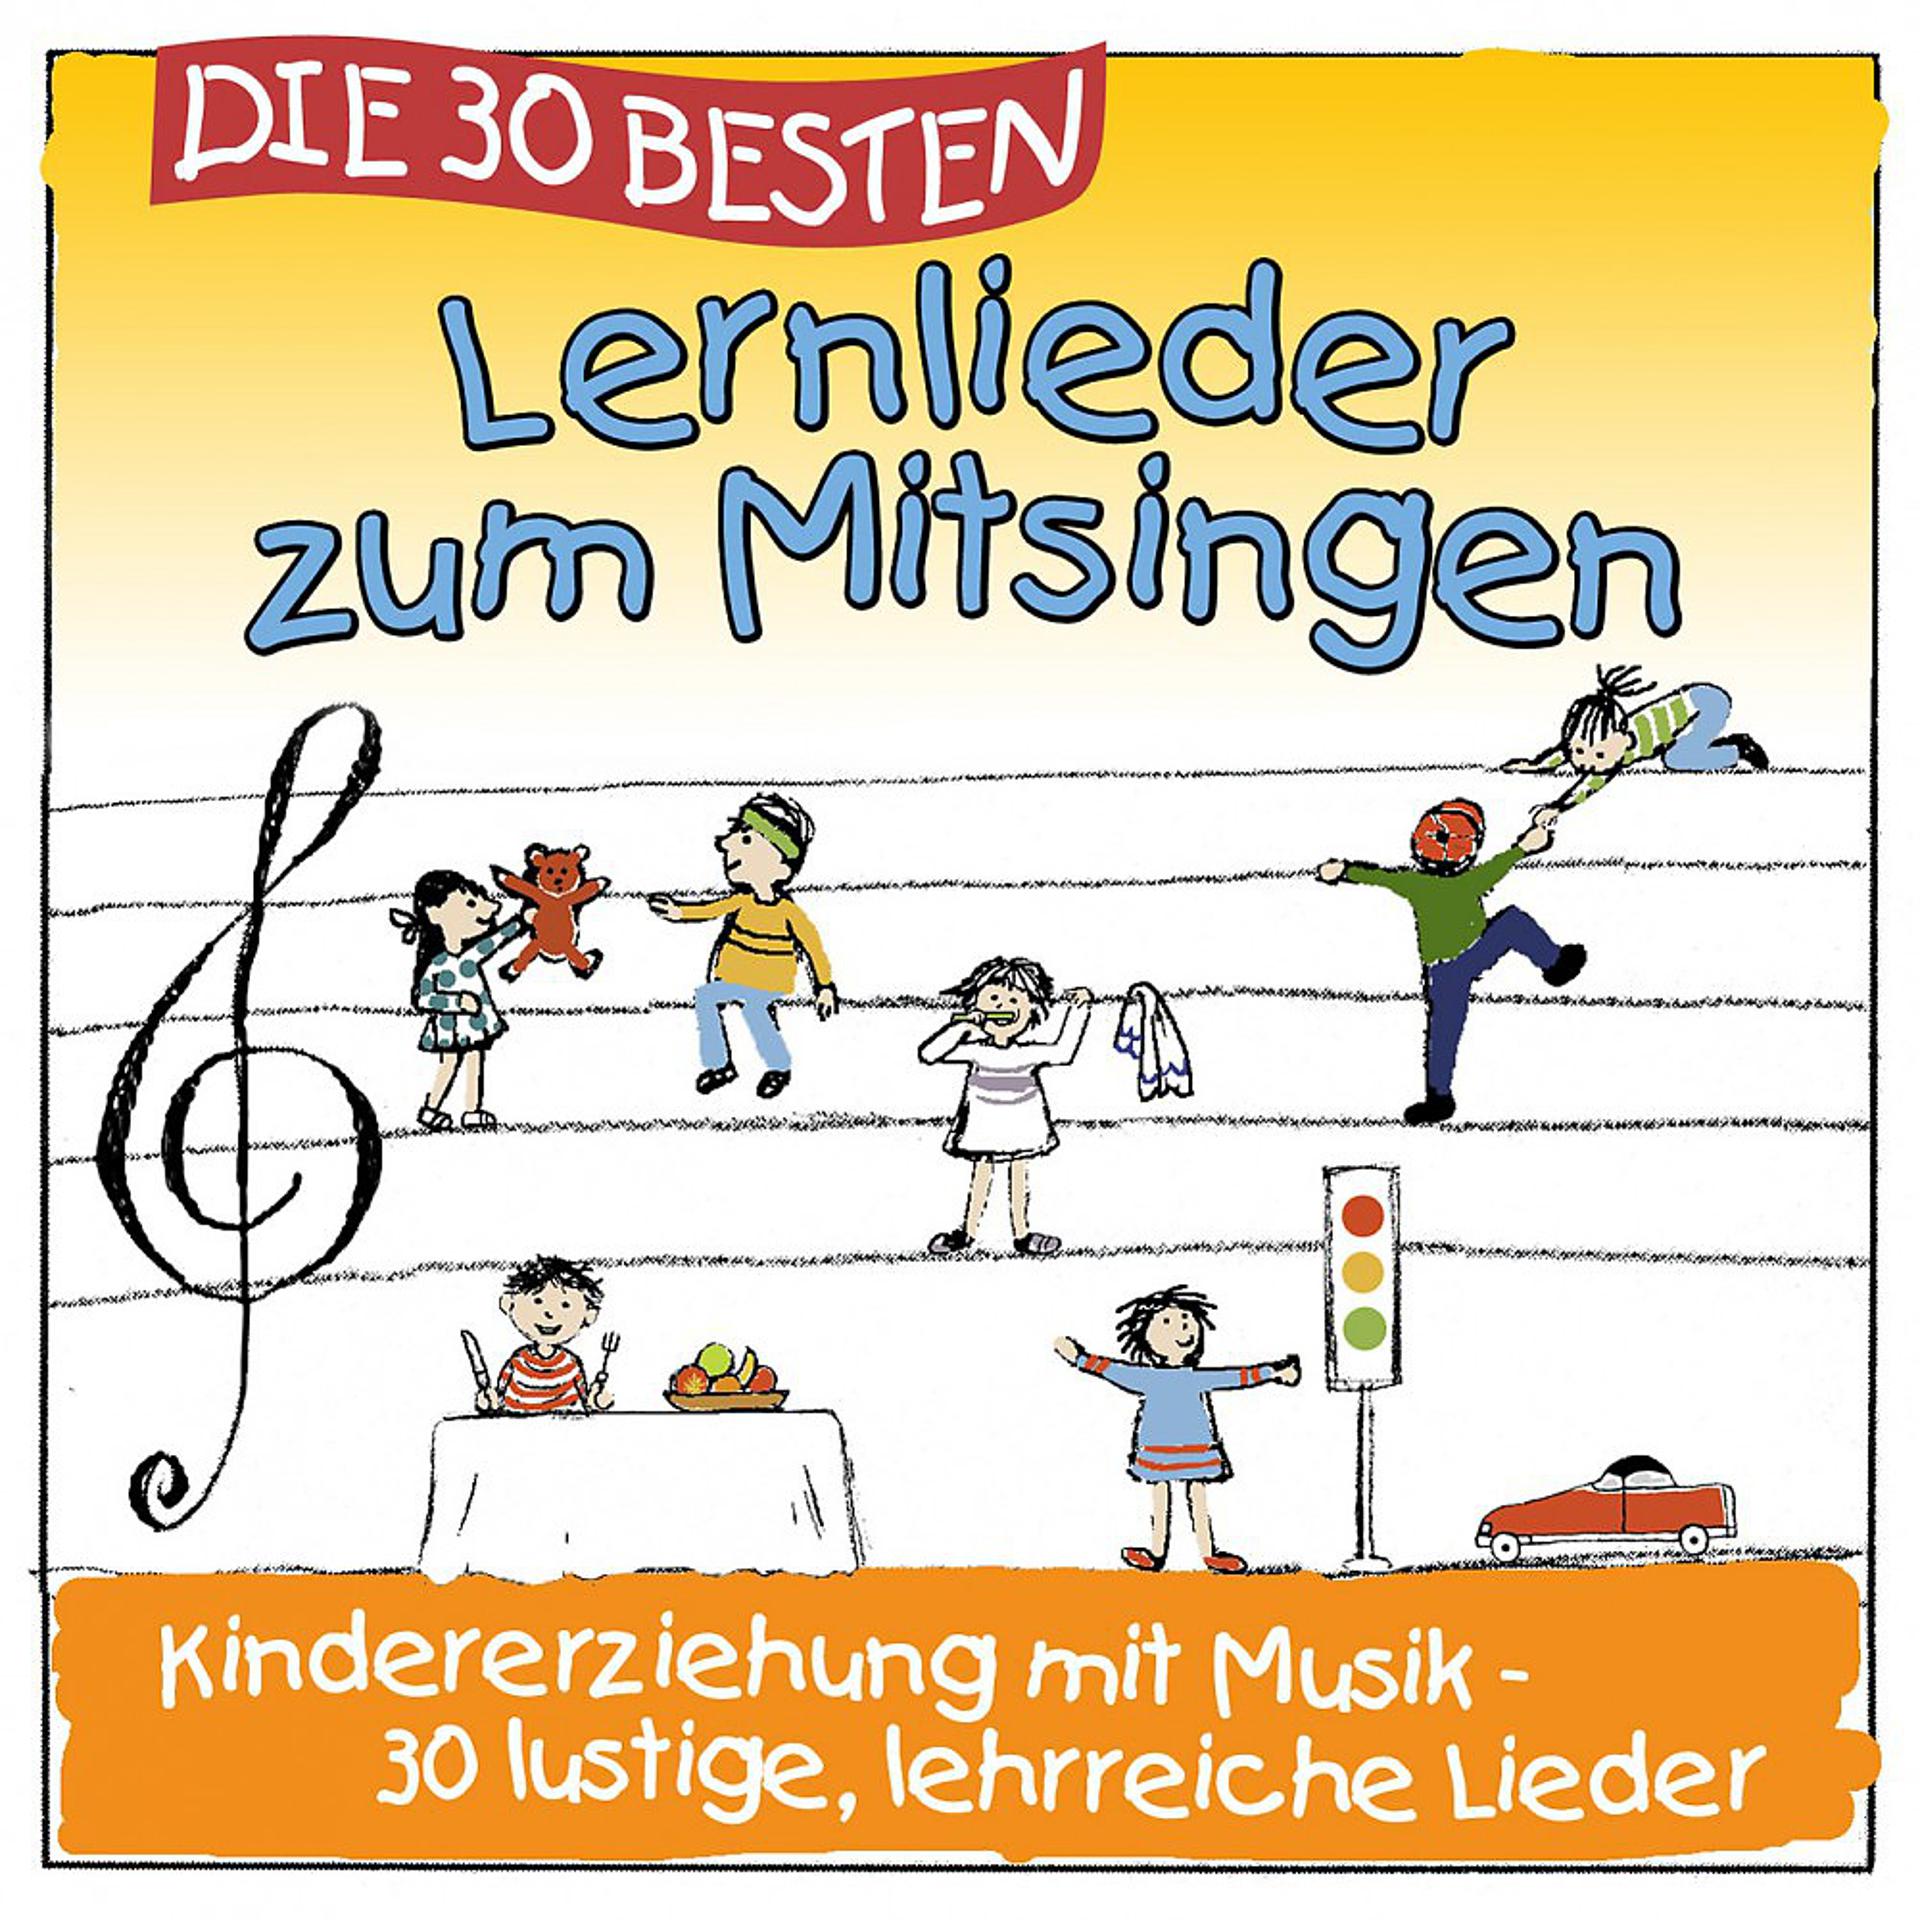 Постер альбома Die 30 besten Lernlieder zum Mitsingen (Erziehung mit Musik! 30 lustige lehrreiche Lieder)